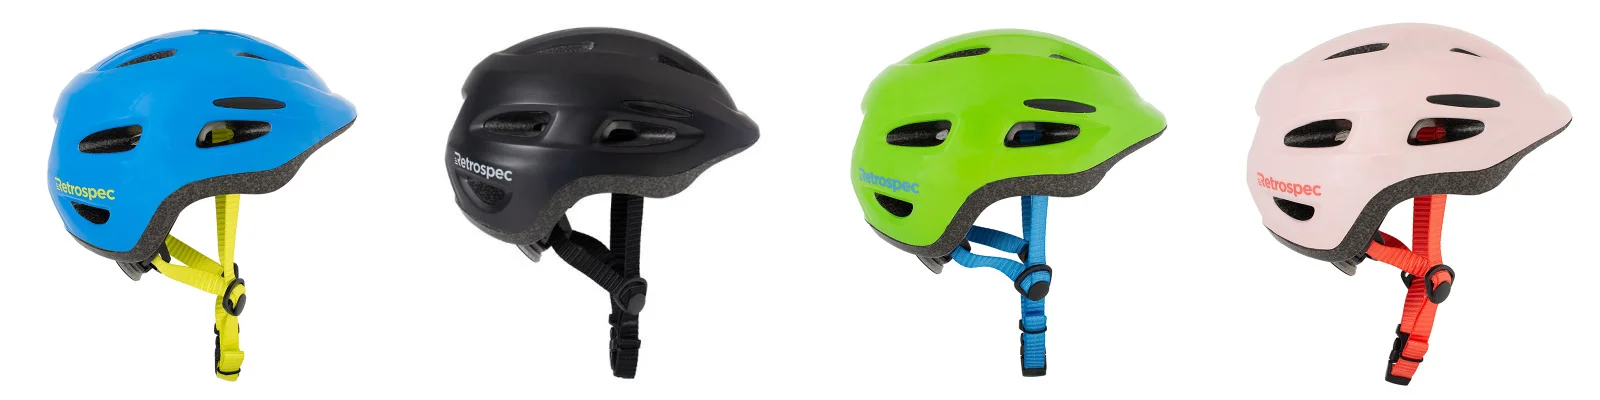 Retrospec Scout children's bicycle helmets